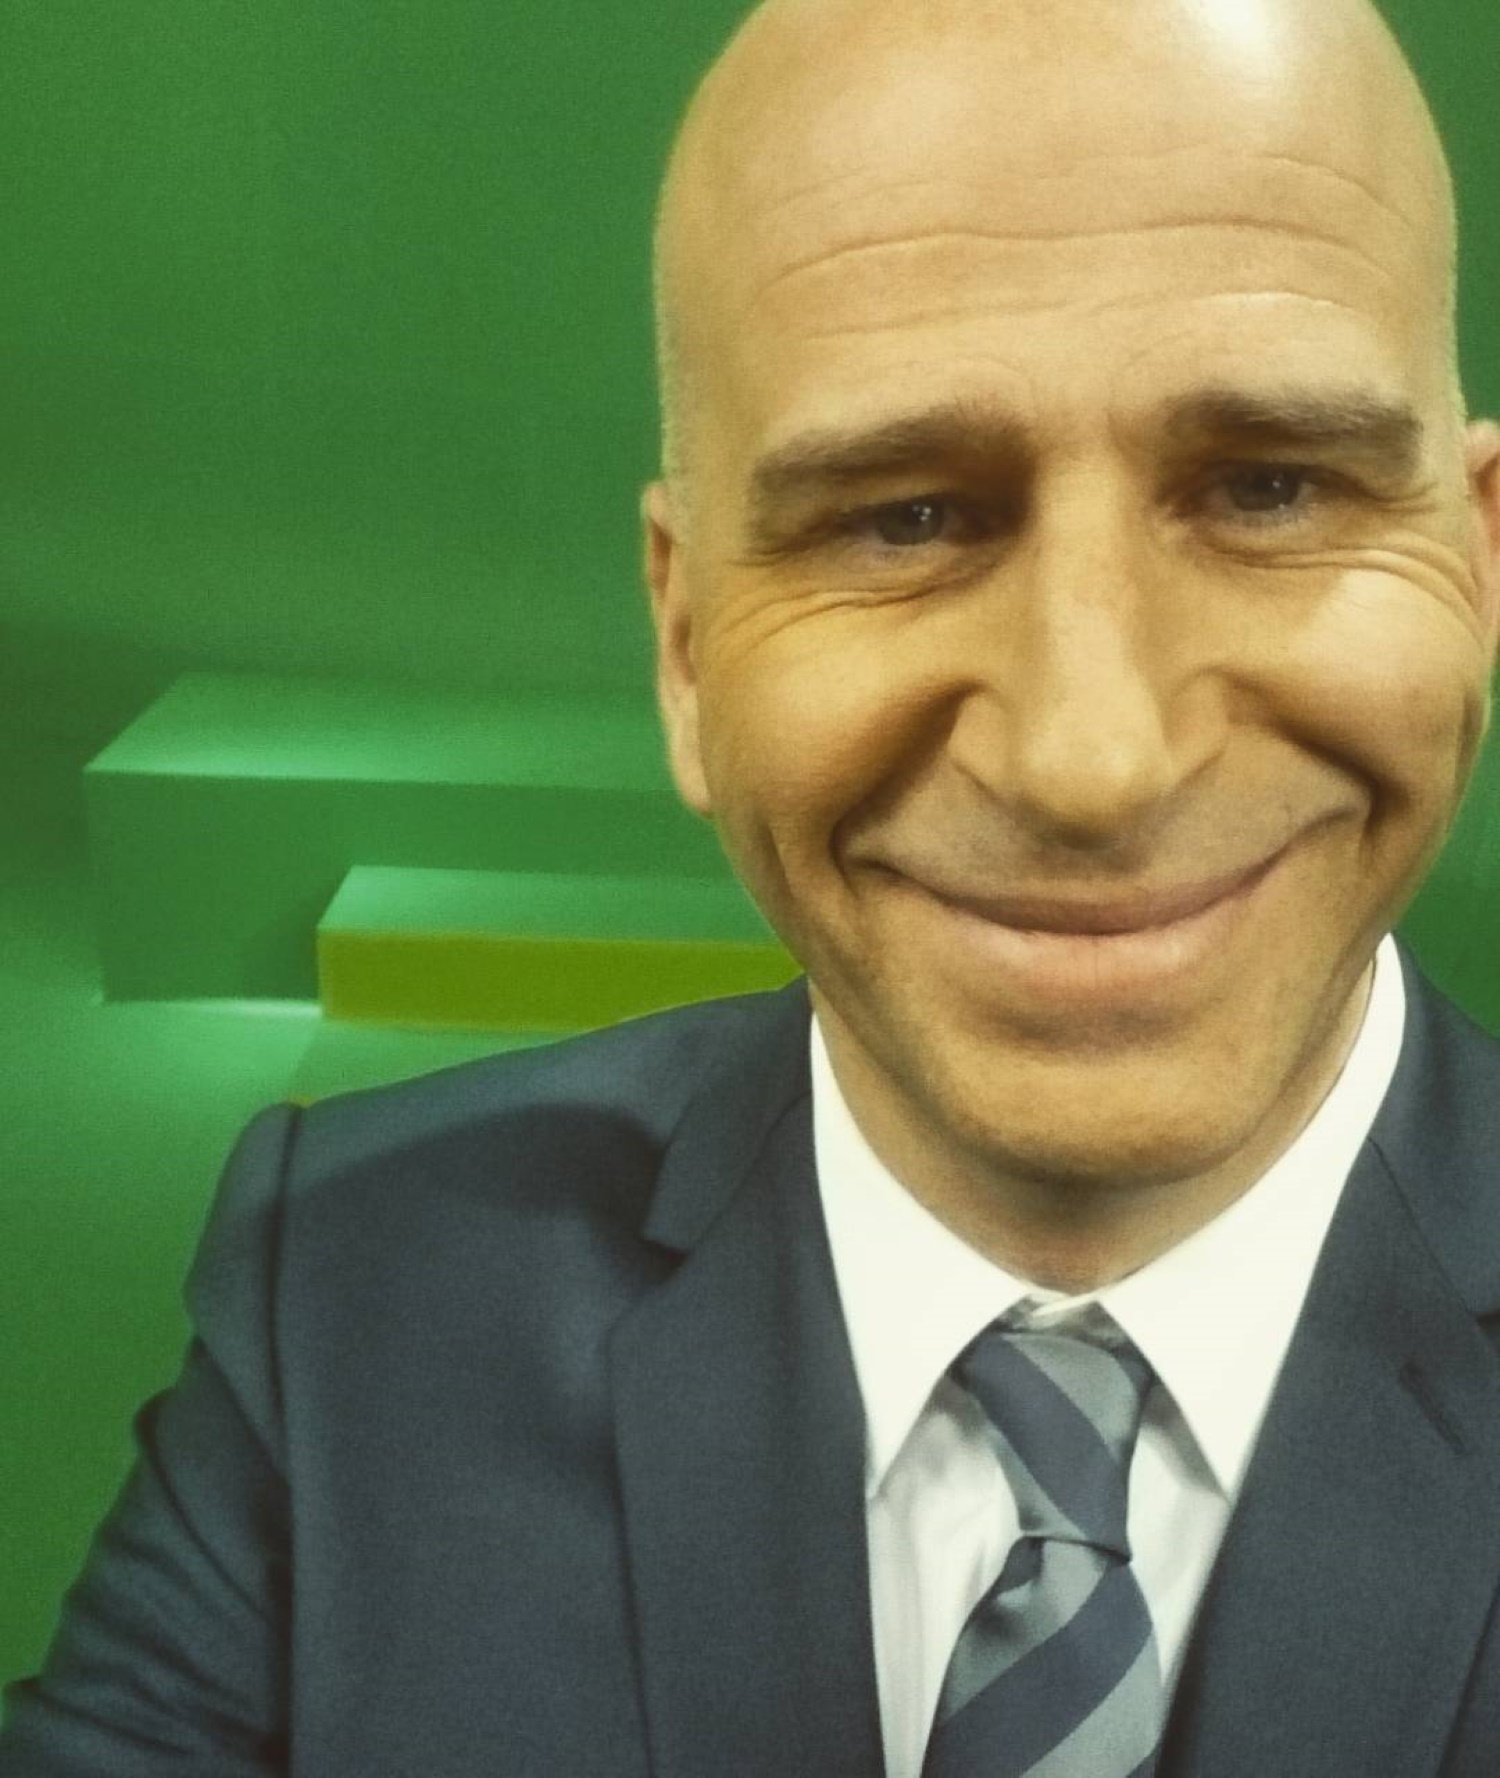 Compañero de Xavi Coral en TV3 muestra una imagen brutal de los dos: mofa máxima